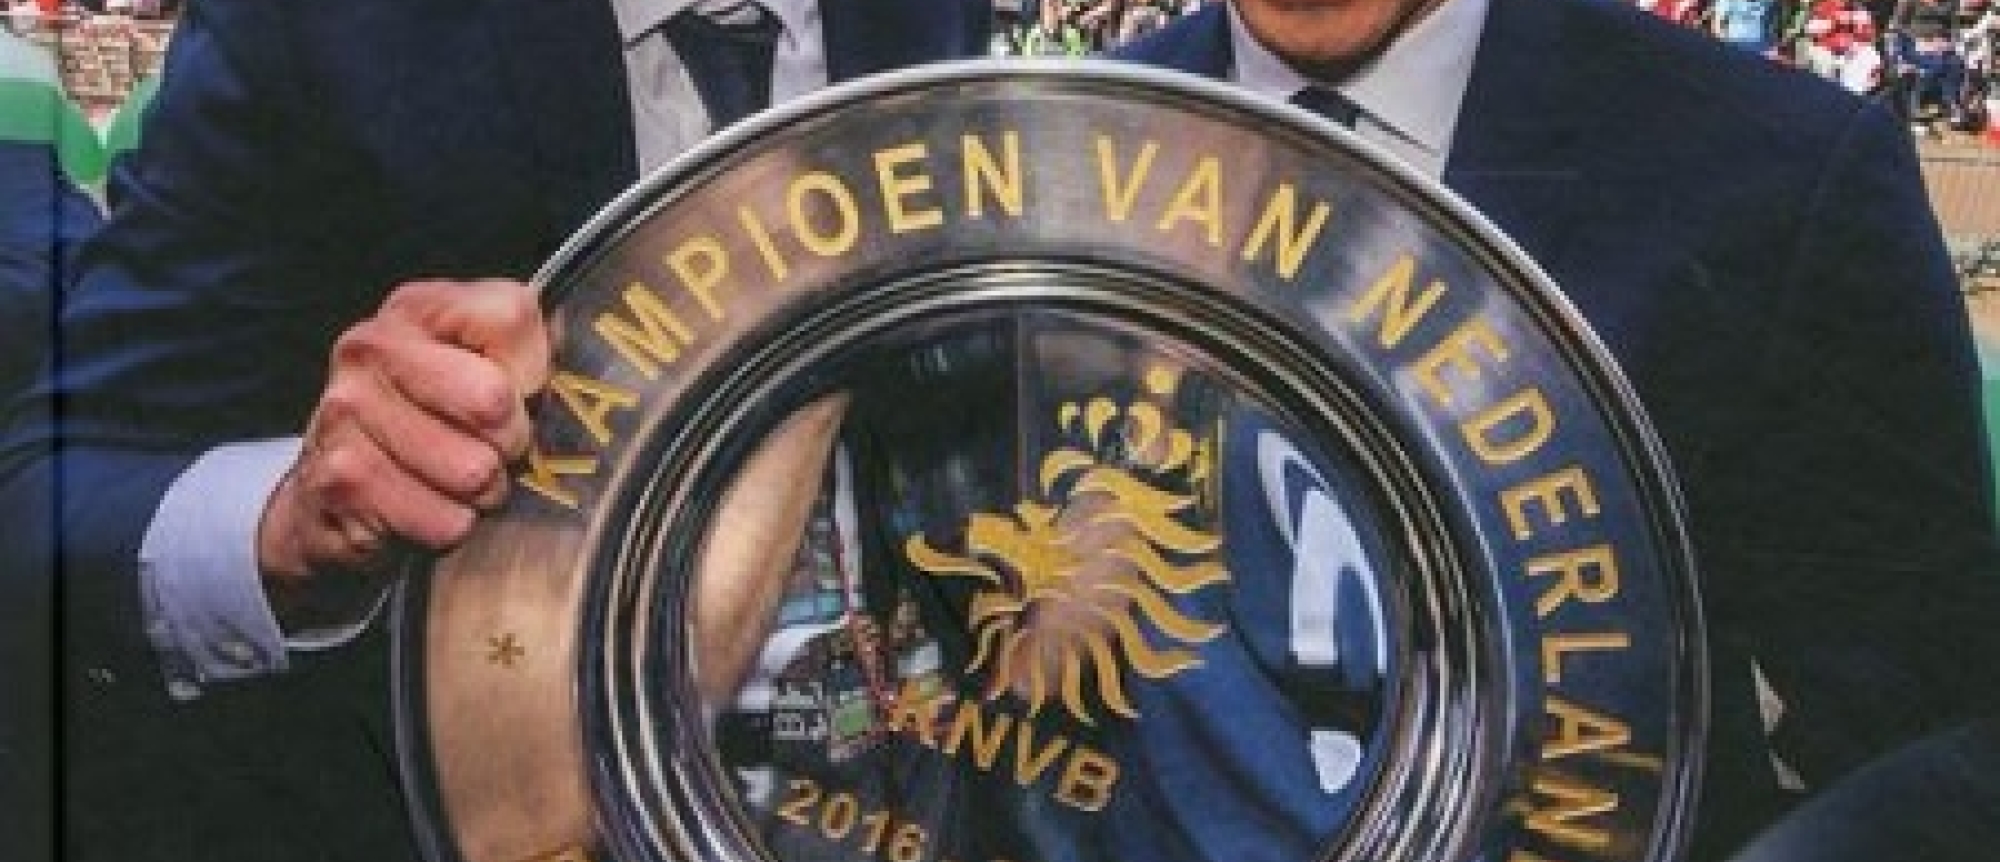 Kampioenen! Het droomseizoen van Feyenoord 2016/2017